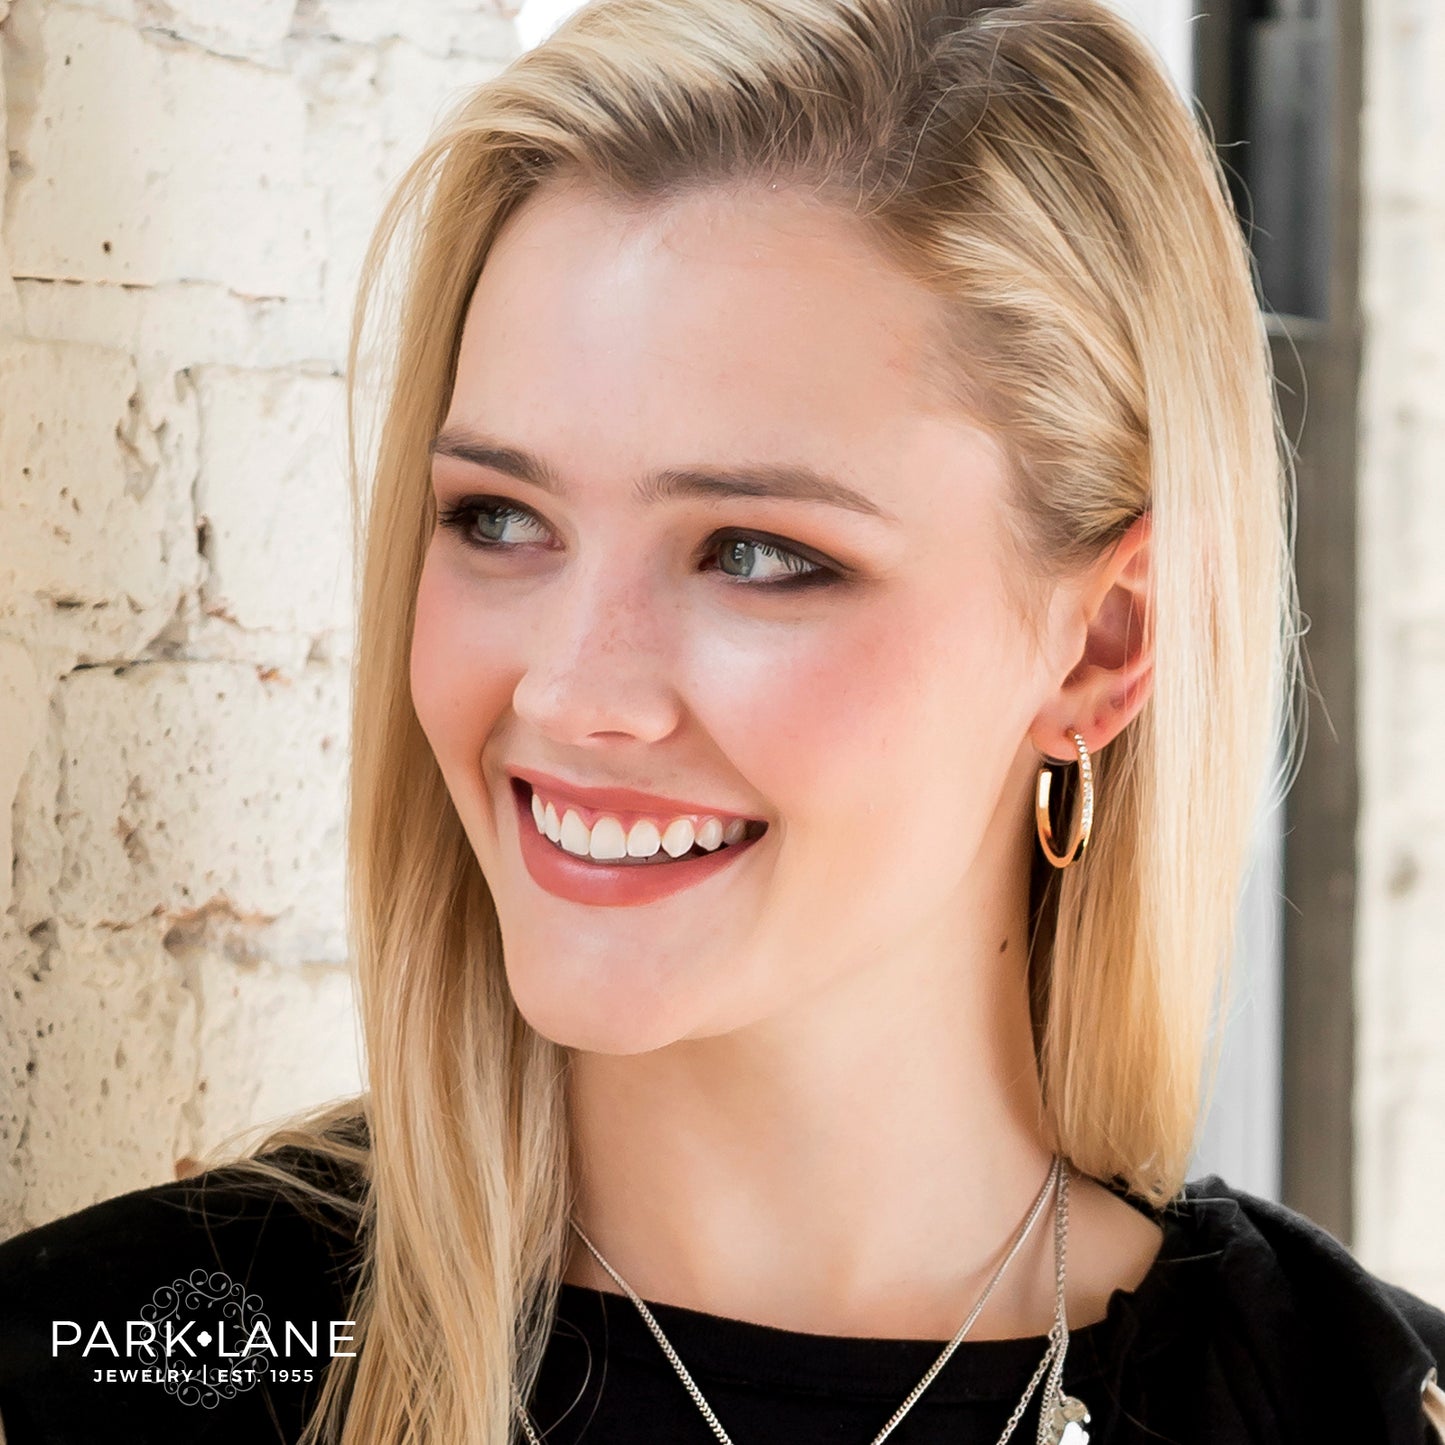 Park Lane Glo Pierced Earrings